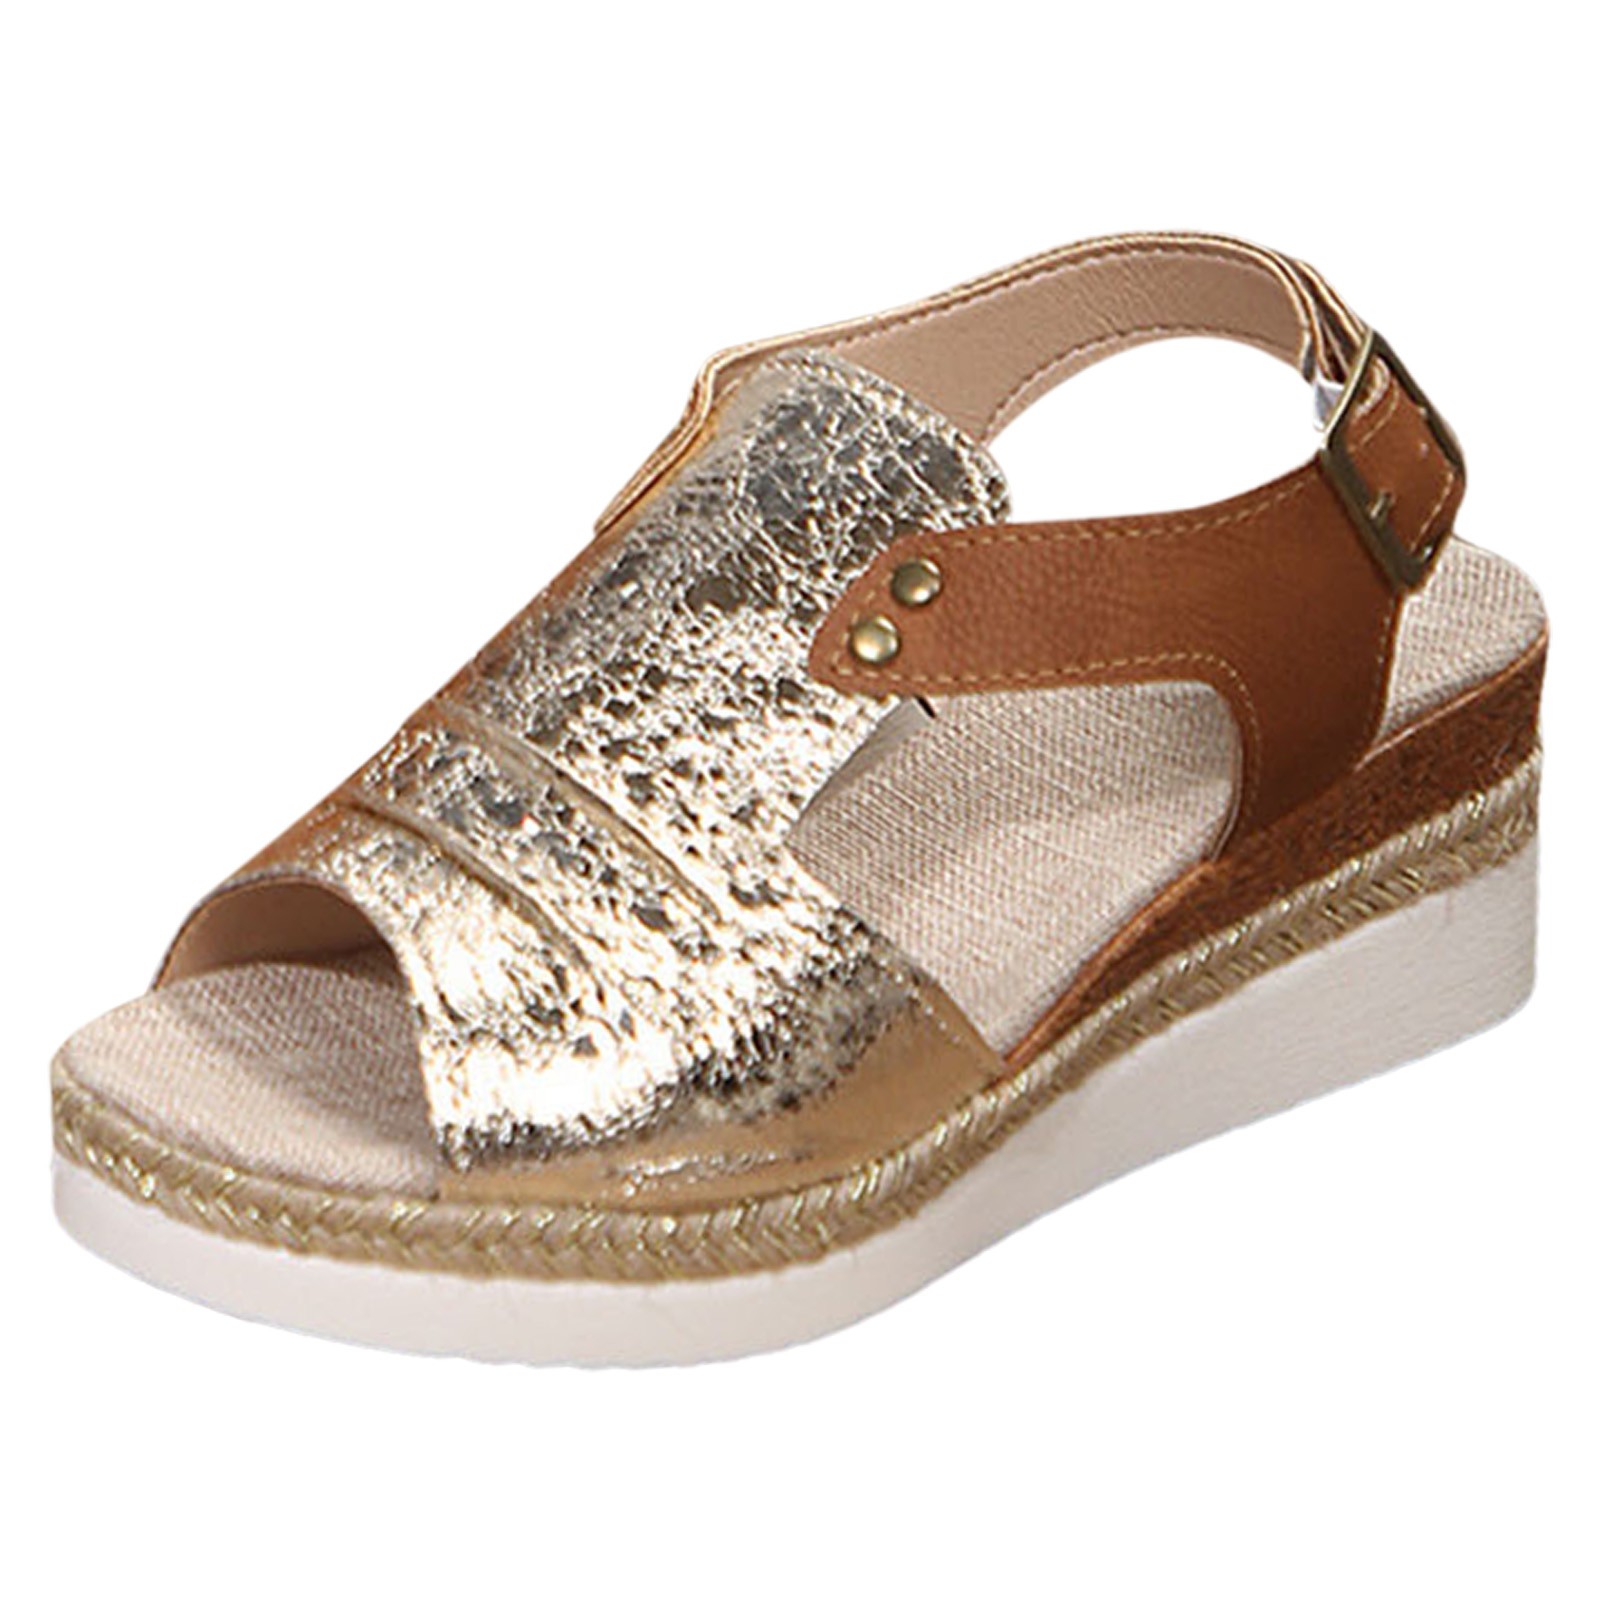 XIAQUJ Women Shoes Fashionable Wedge Sandals Open Toe Boho Style Beach ...